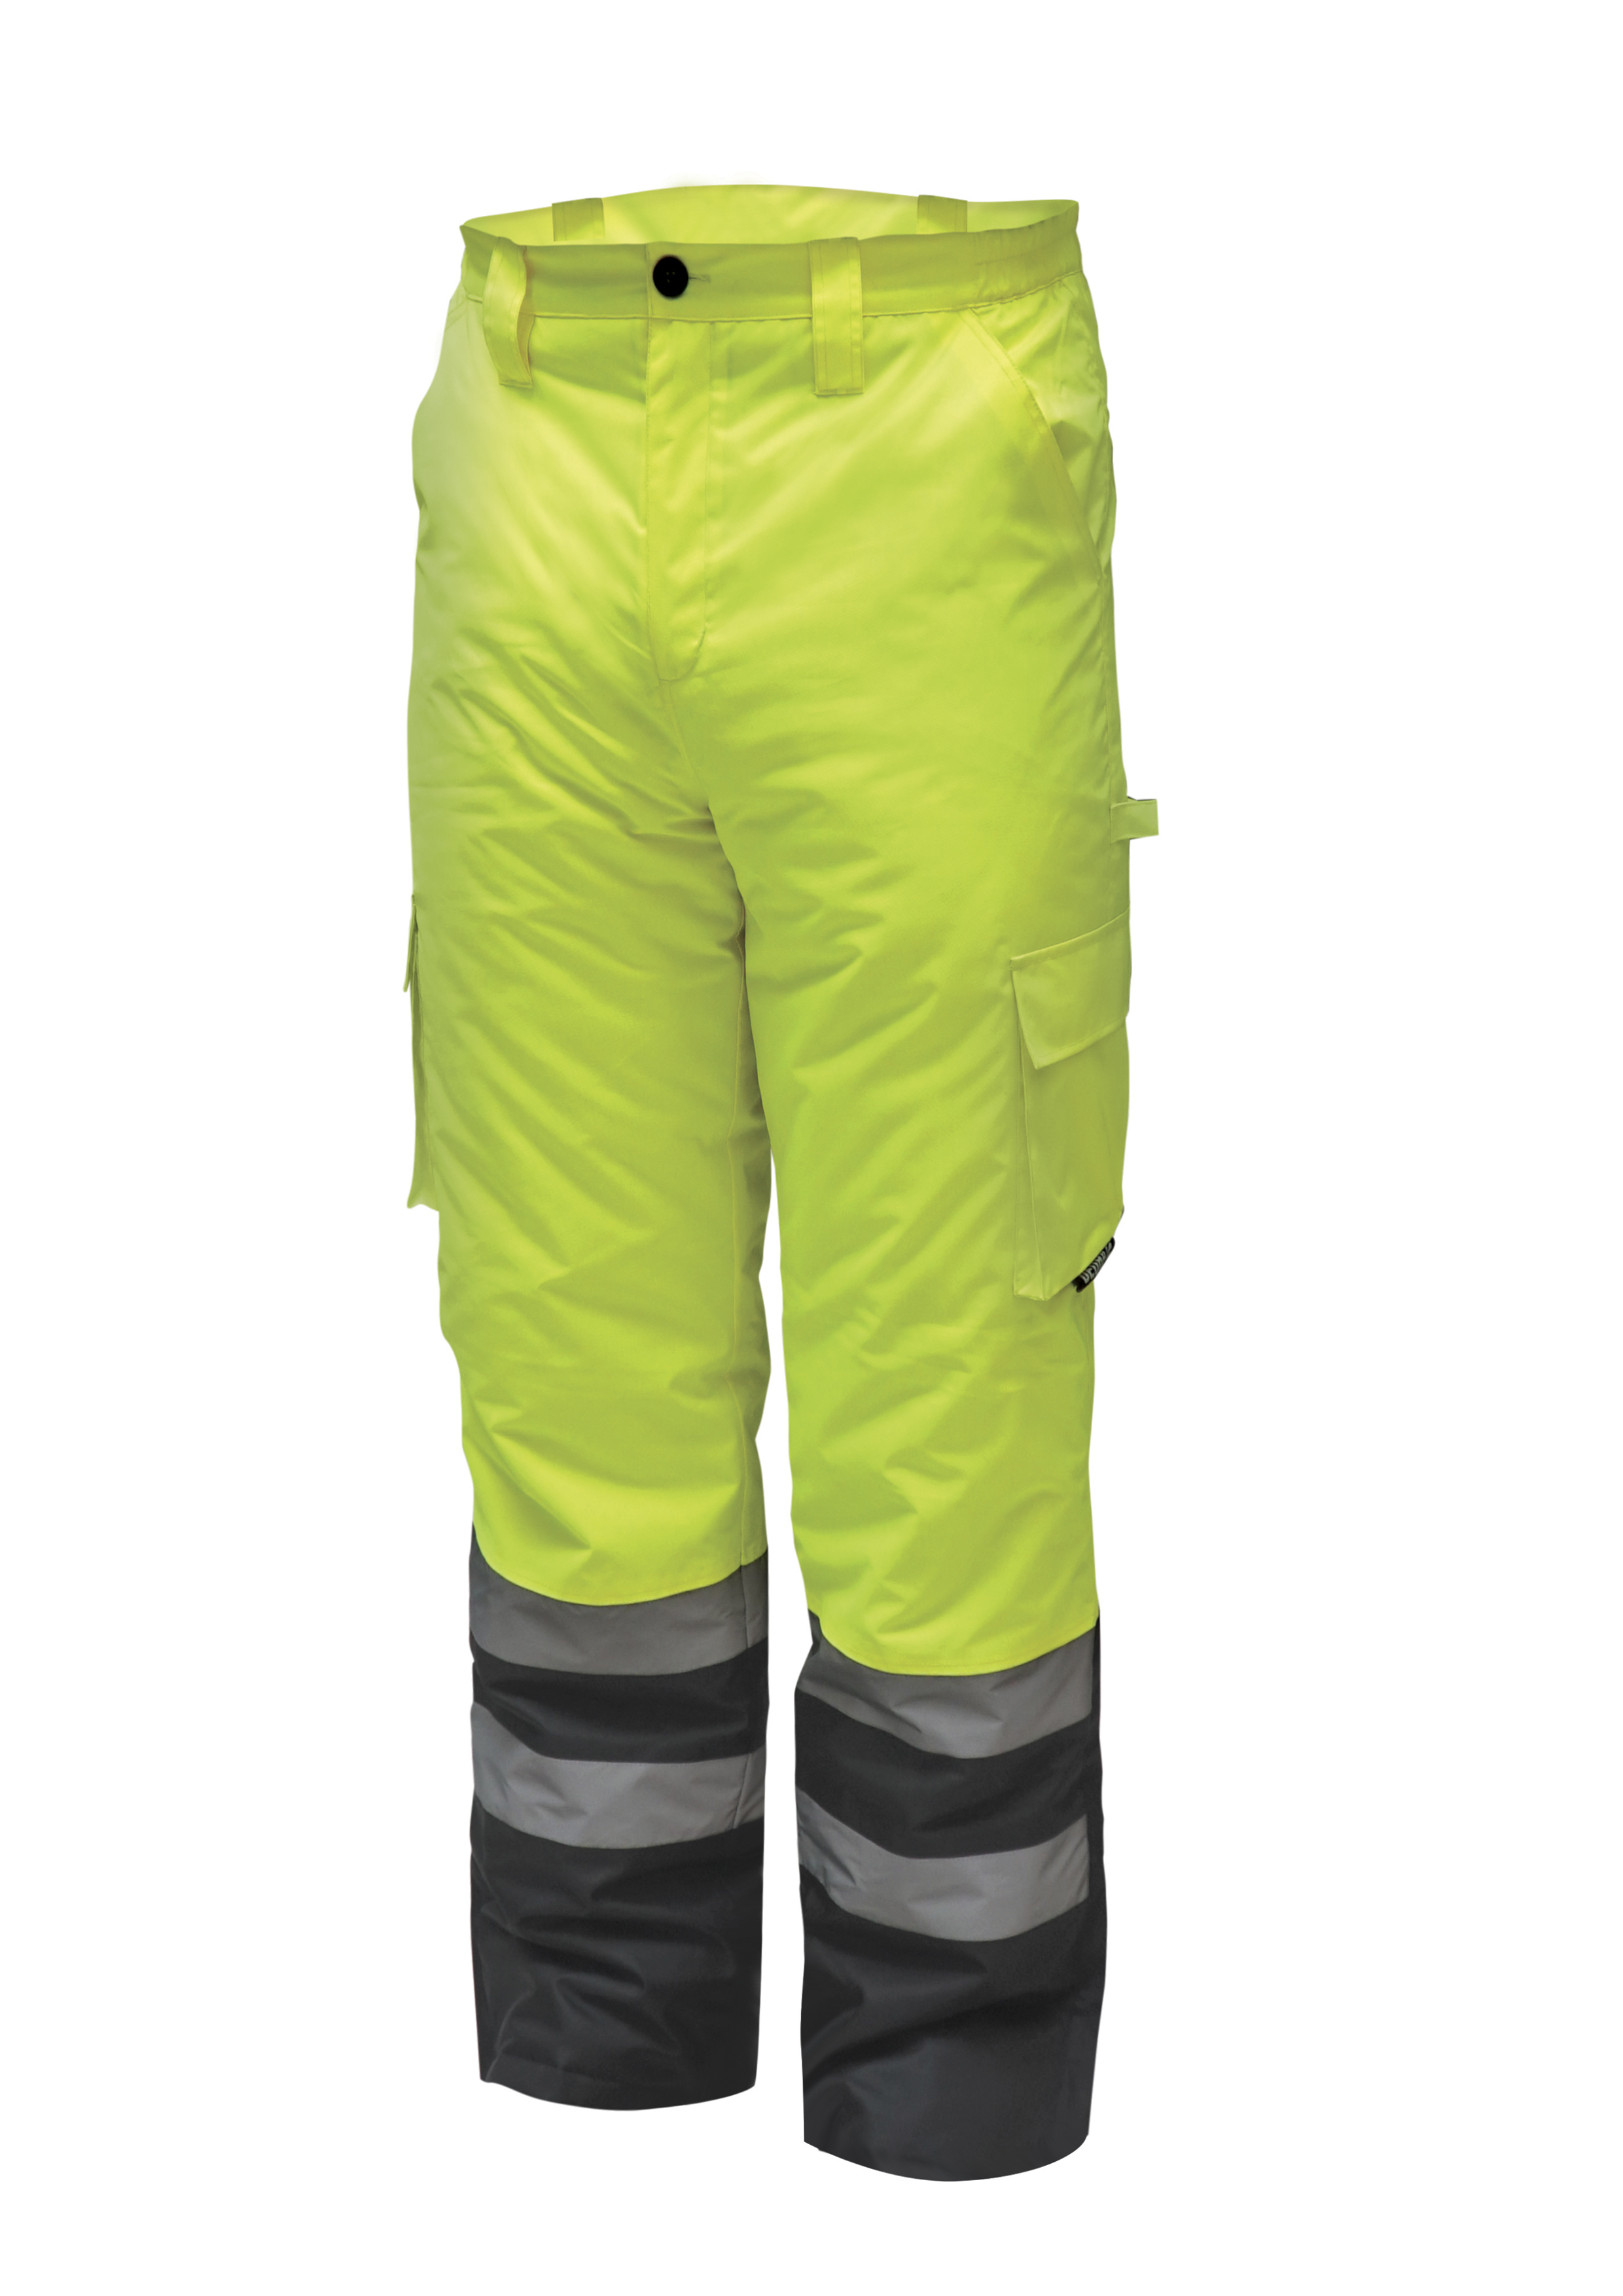 Reflexní zateplené kalhoty vel. L, žluté DEDRA BH80SP1-L + Dárek, servis bez starostí v hodnotě 300Kč